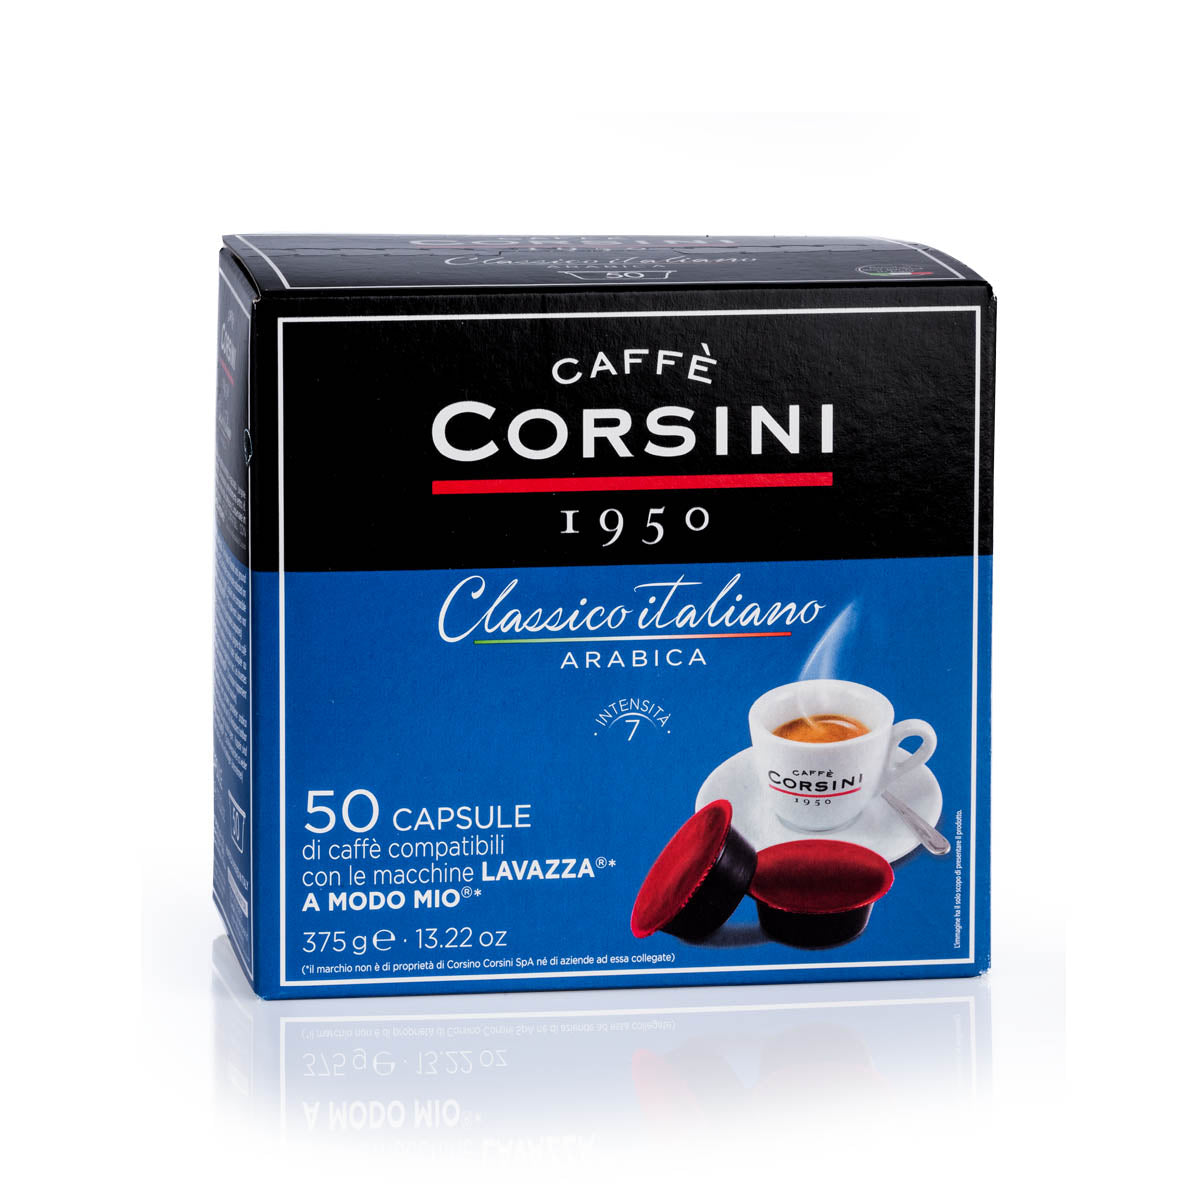 50 Lavazza®* A Modo Mio®* compatible coffee capsules per pack | 100% Arabica Classico Italiano | Box of 4